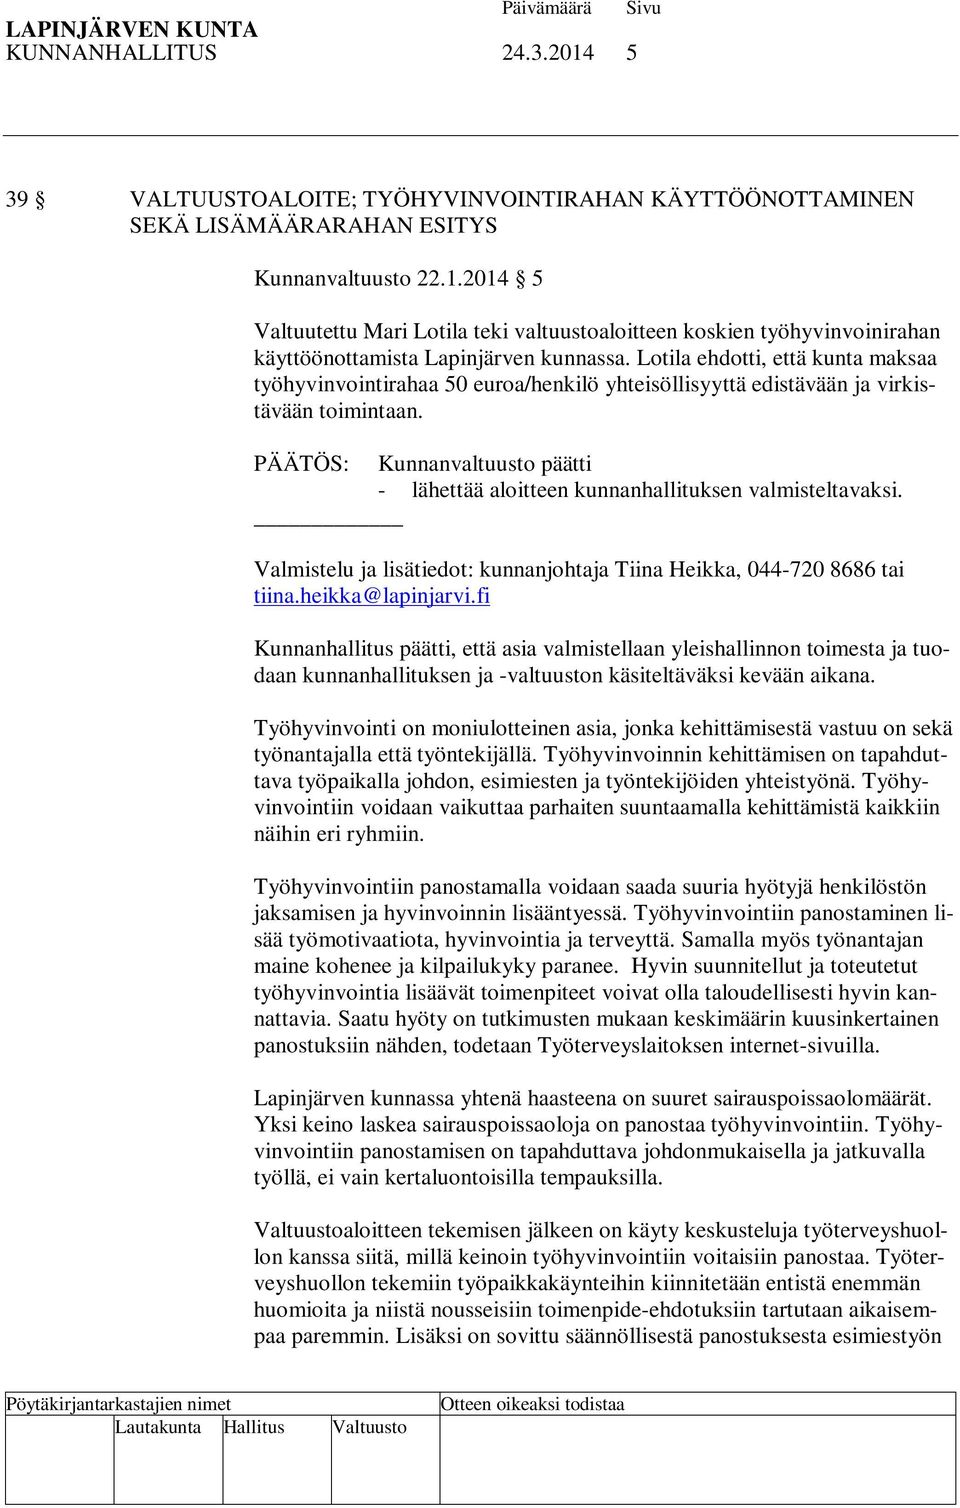 PÄÄTÖS: Kunnanvaltuusto päätti - lähettää aloitteen kunnanhallituksen valmisteltavaksi. Valmistelu ja lisätiedot: kunnanjohtaja Tiina Heikka, 044-720 8686 tai tiina.heikka@lapinjarvi.